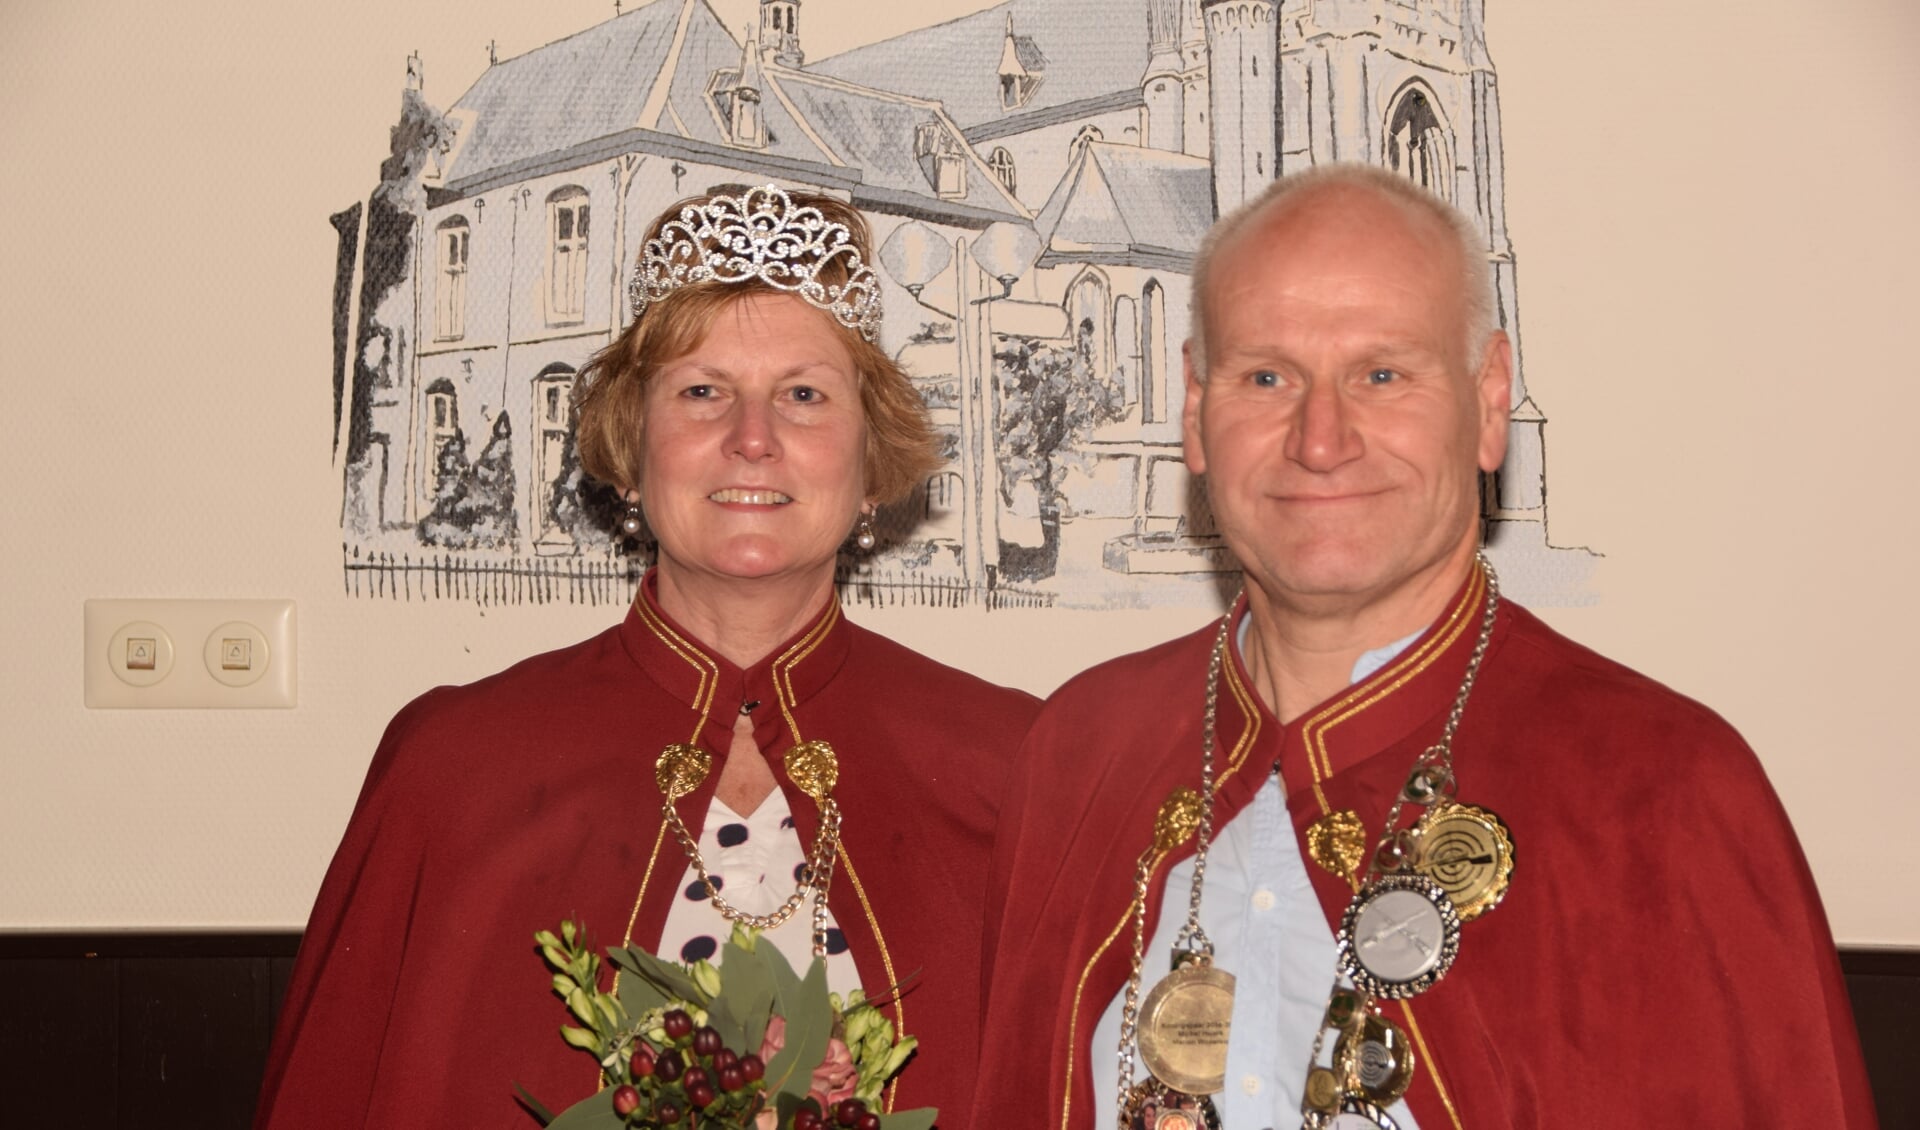 Jeannet en Wilbert Stoverinck zijn de kersverse koningin en koning van Zieuwent. Foto: Luuk Kouijzer